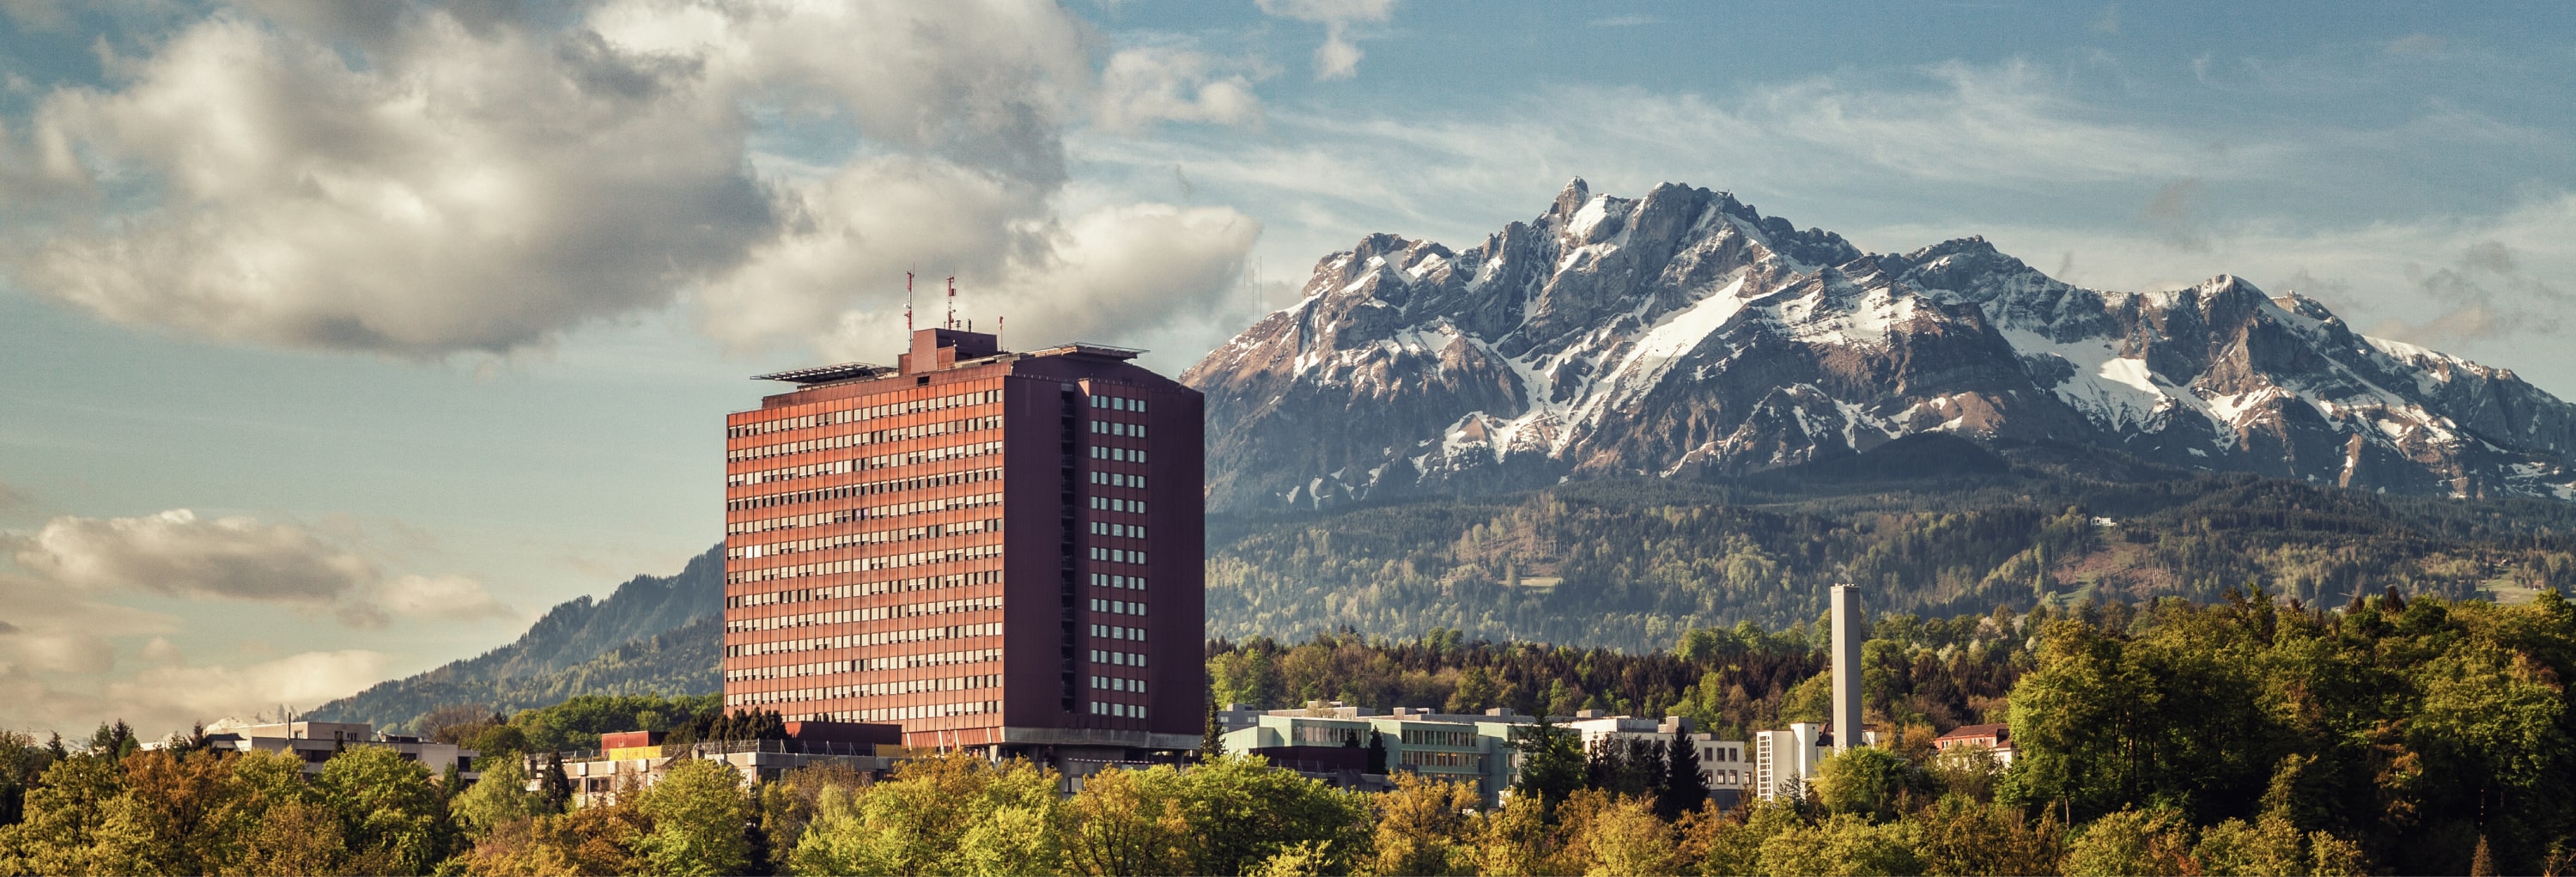 Auf diesem Bild sieht man das Kantonsspital in Luzern. Dahinter sind die Schweizer Alpen ersichtlich. HOGALOG arbeitet bereits seit mehreren Jahren mit dem Kantonsspital in Luzern und den gesamten Einkaufsprozess digitalisiert. 